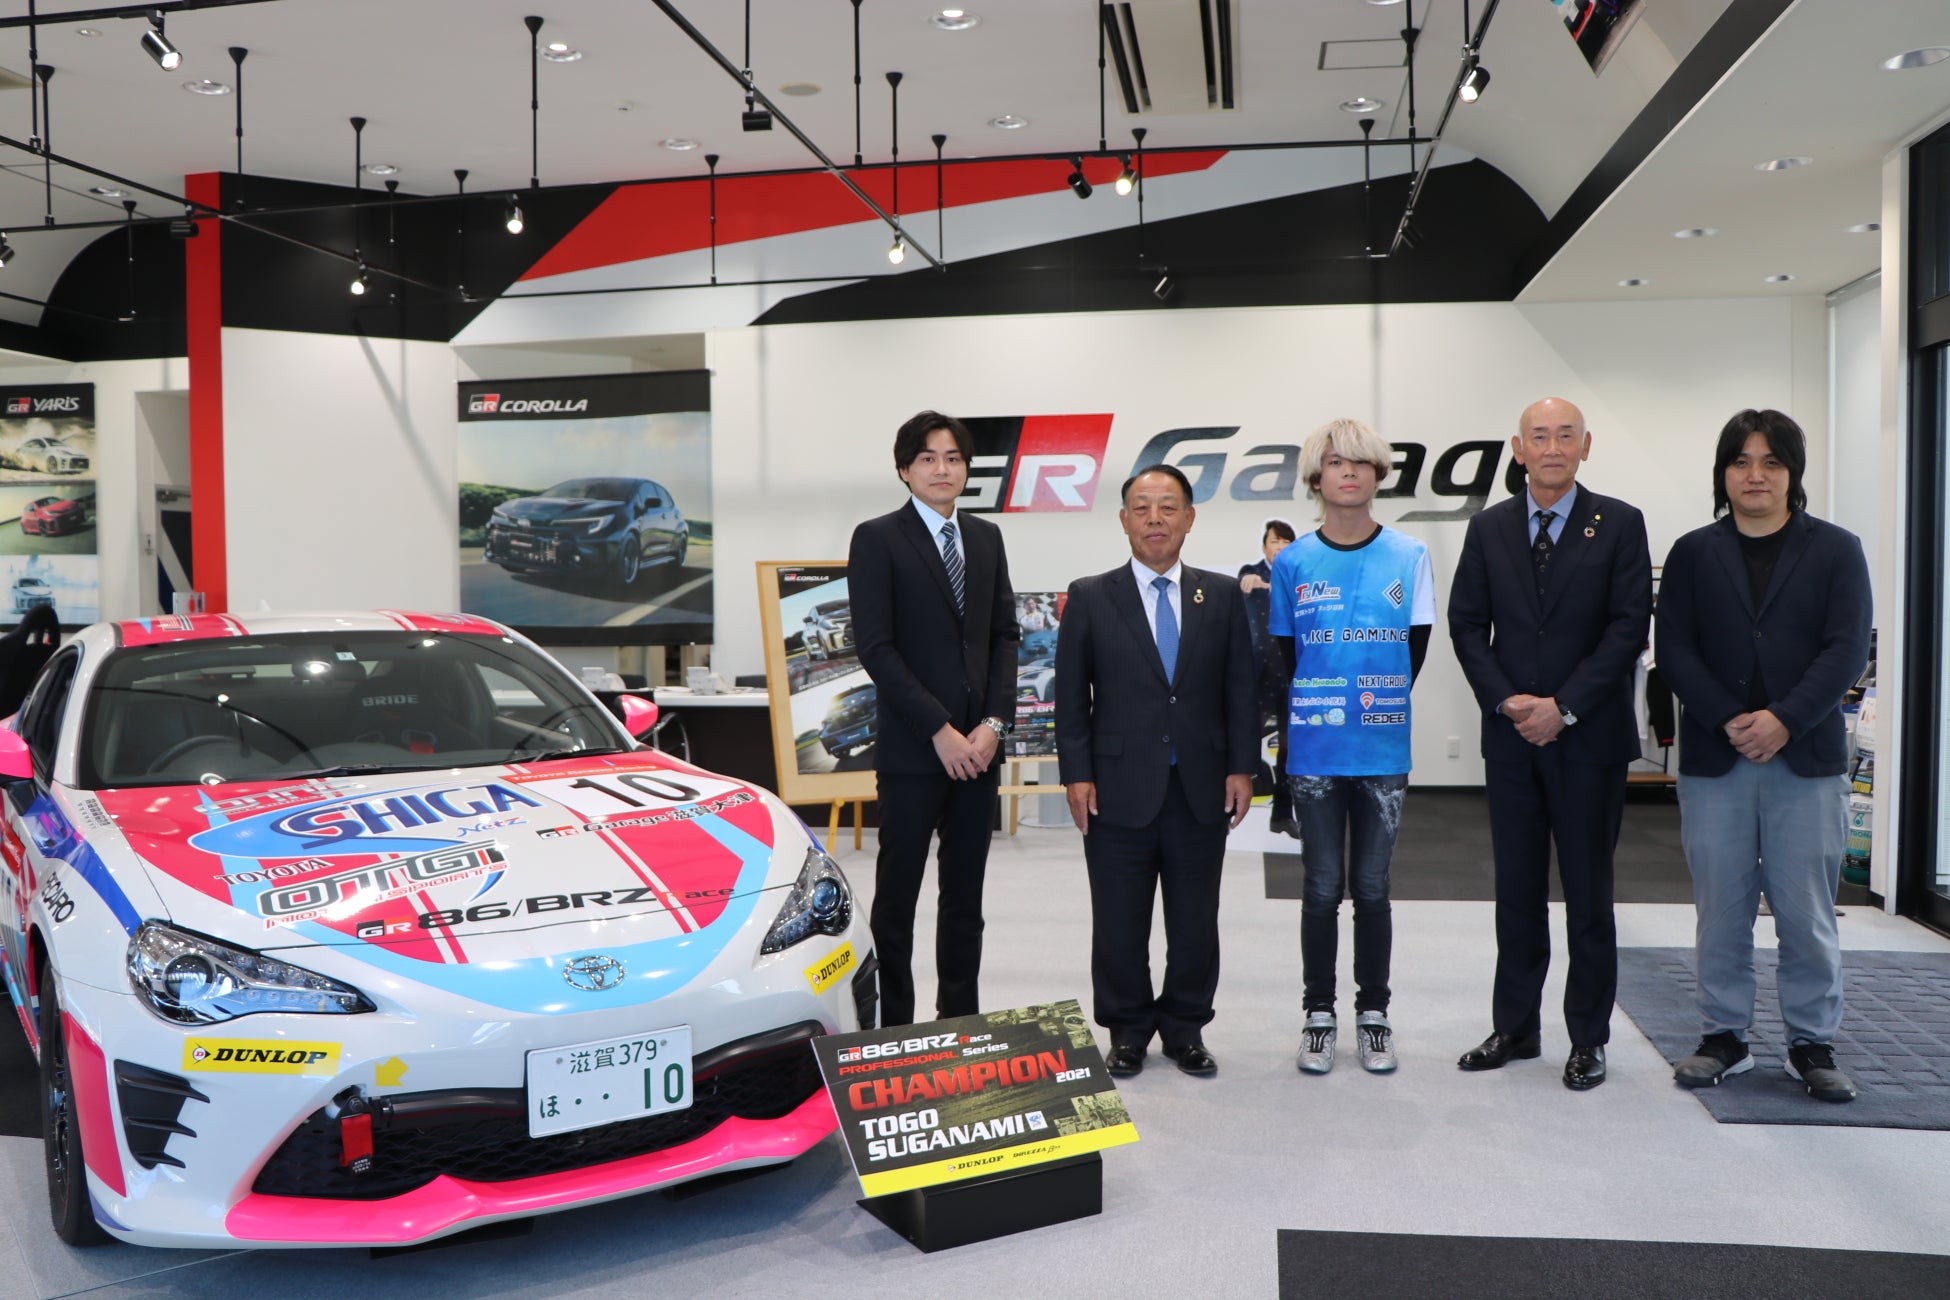 世界3位に輝いたLAKE GAMING所属の佐々木拓真選手がチームスポンサーである滋賀トヨタ自動車株式会社、ネッツトヨタ滋賀株式会社へ表敬訪問を行いました。